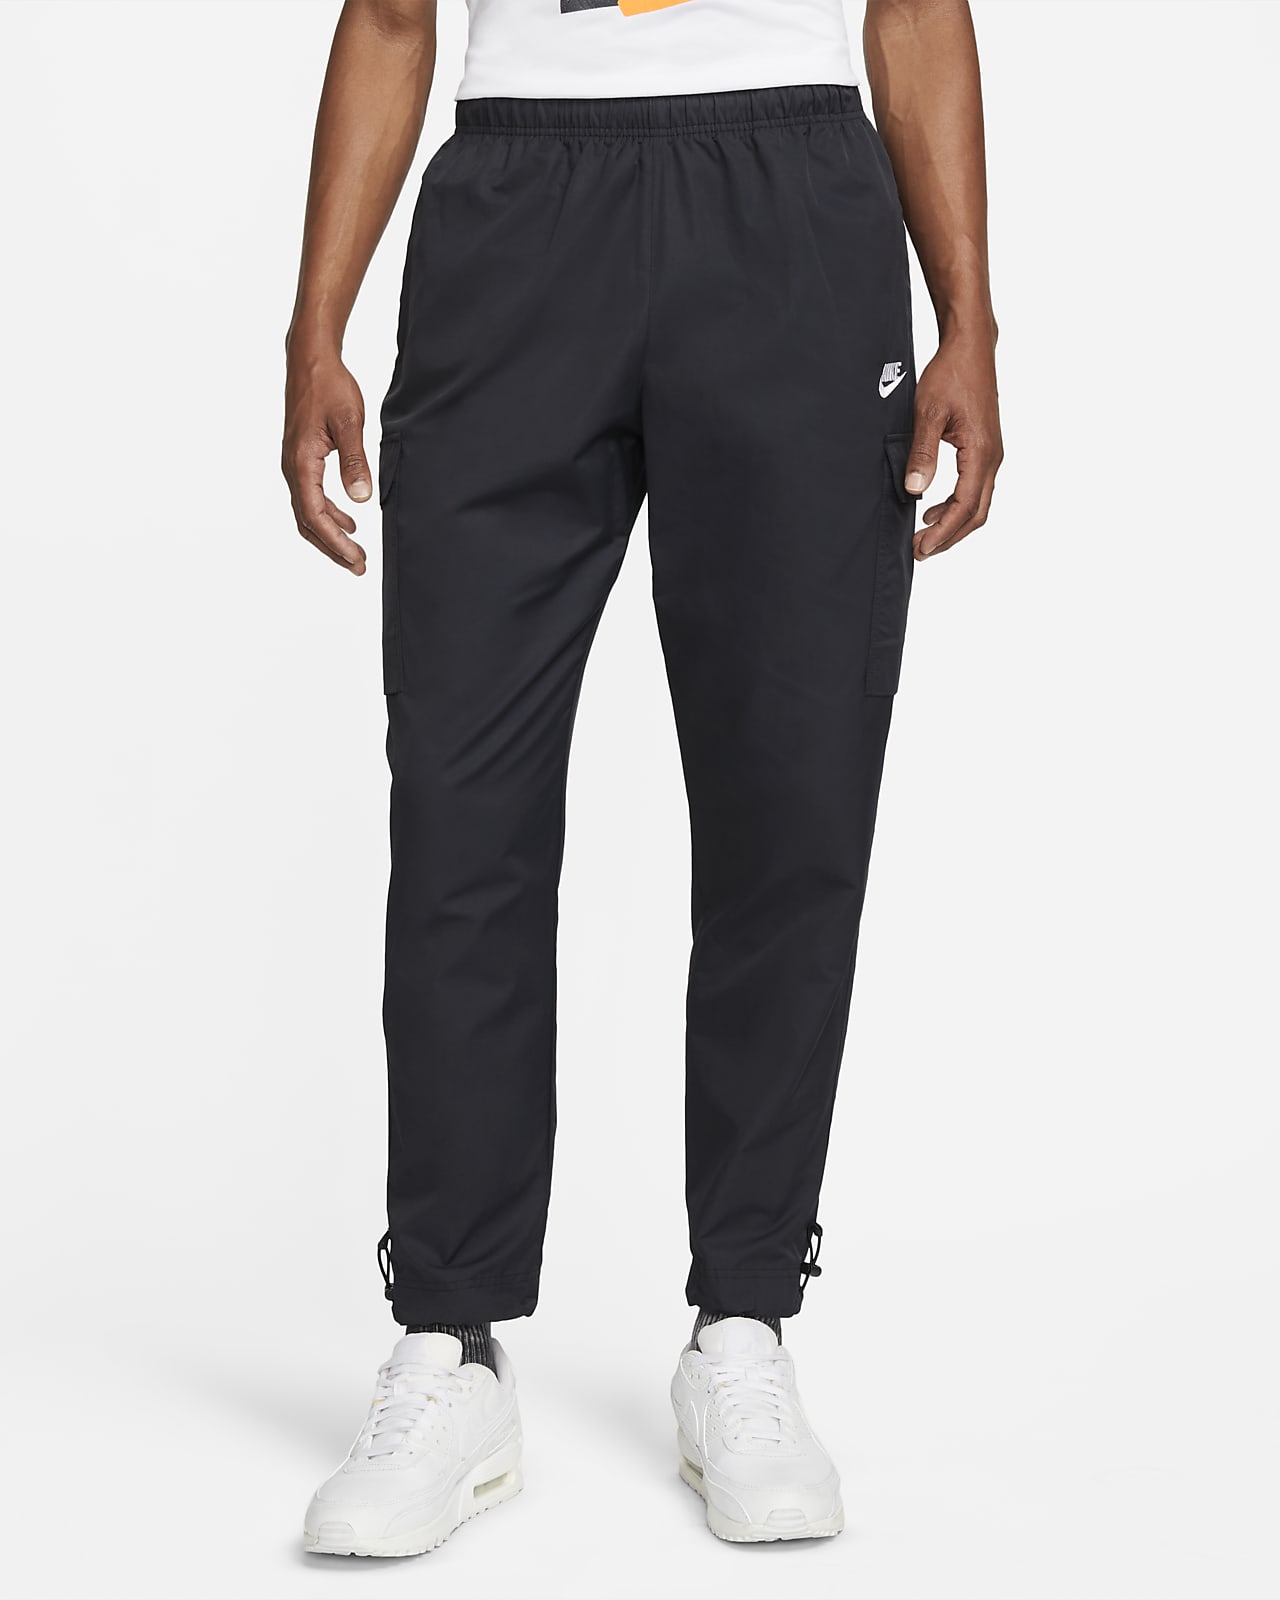 Pantaloni in tessuto Nike Sportswear Repeat – Uomo